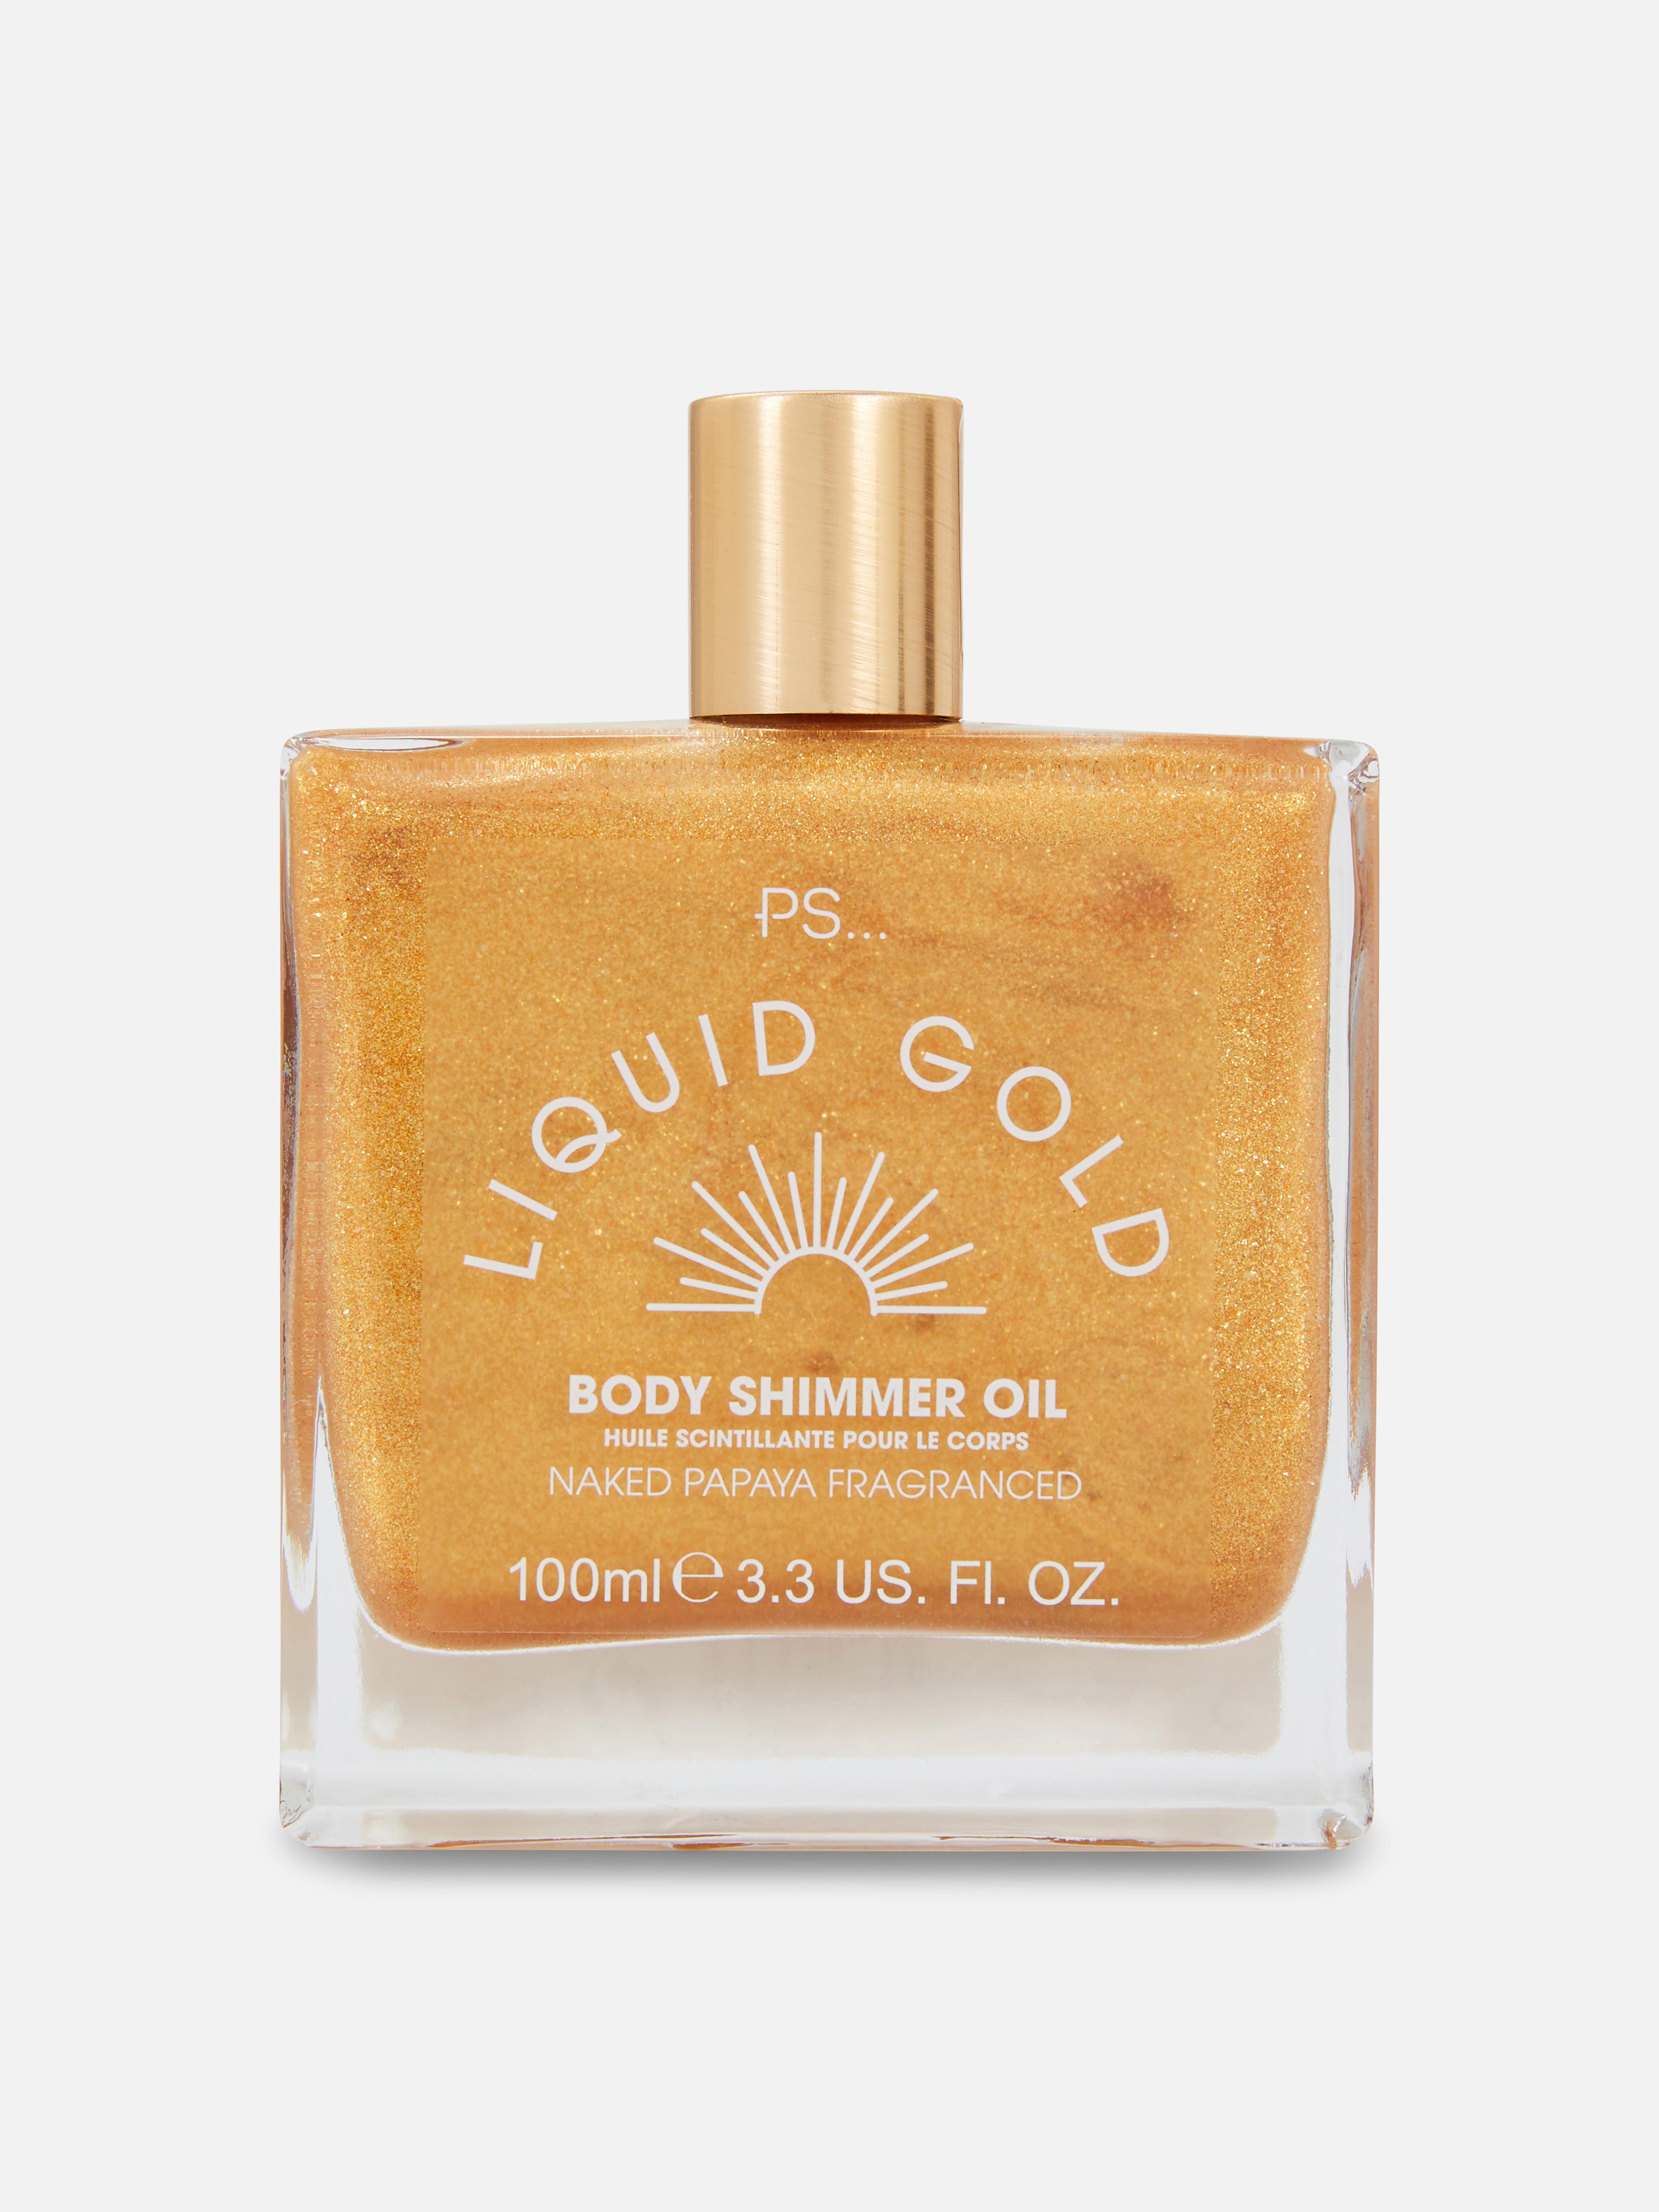 PS... Liquid Gold Shimmering Oil